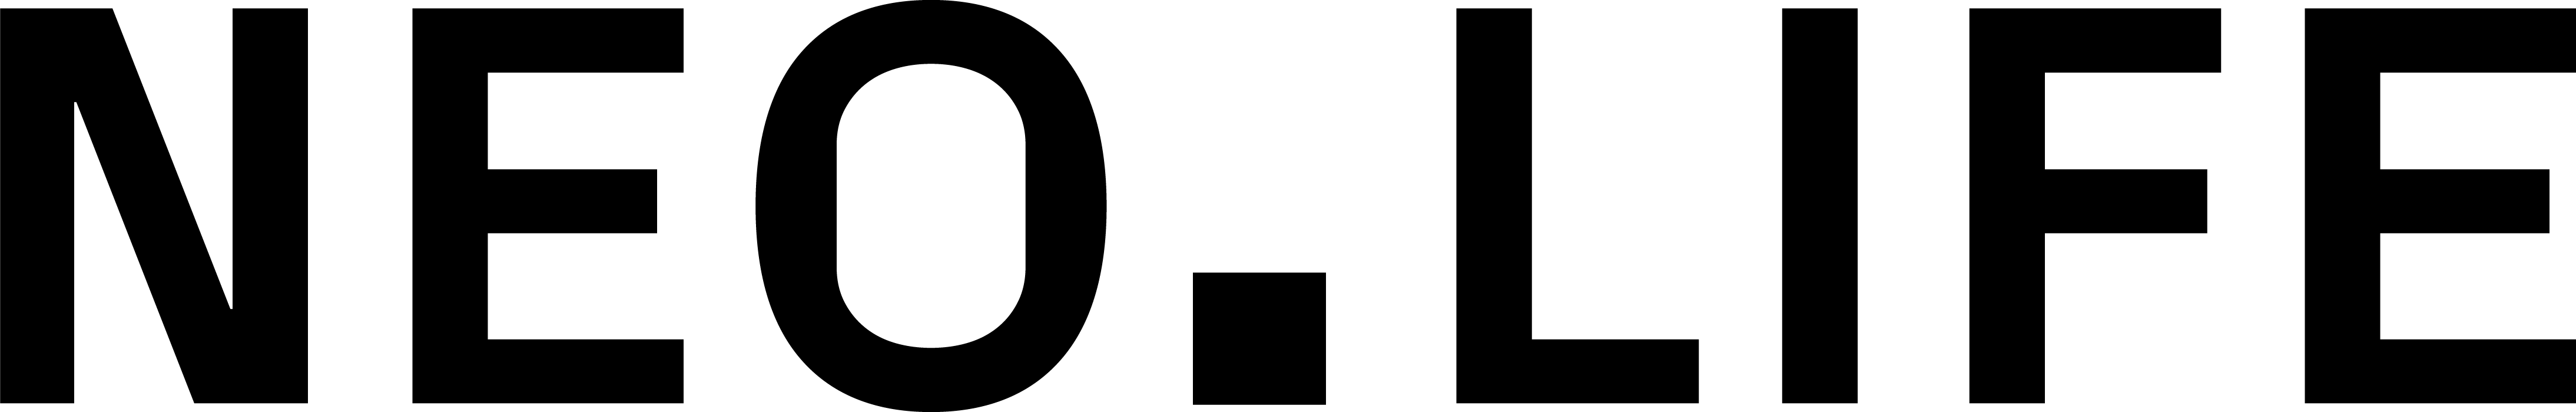 NEOLIFE-logo-full-RBG